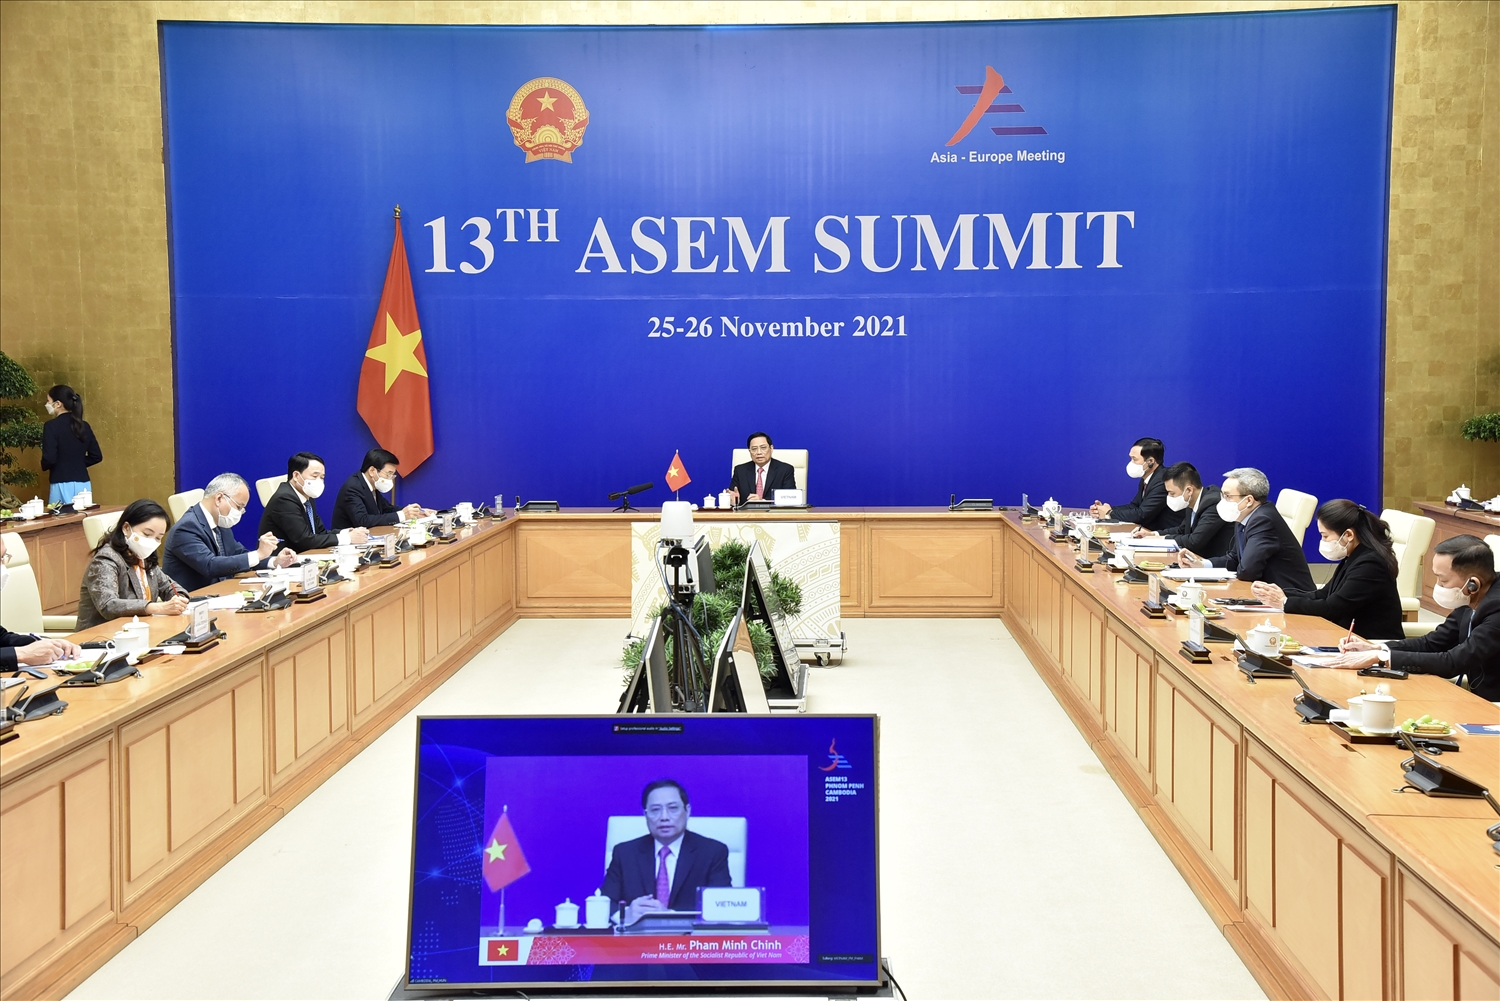 Các nhà lãnh đạo chia sẻ quan điểm về tình hình chính trị, kinh tế xã hội tại hai châu lục và thảo luận về các phương hướng nhằm thúc đẩy hơn nữa hợp tác ASEM. (Ảnh VGP/Nhật Bắc)